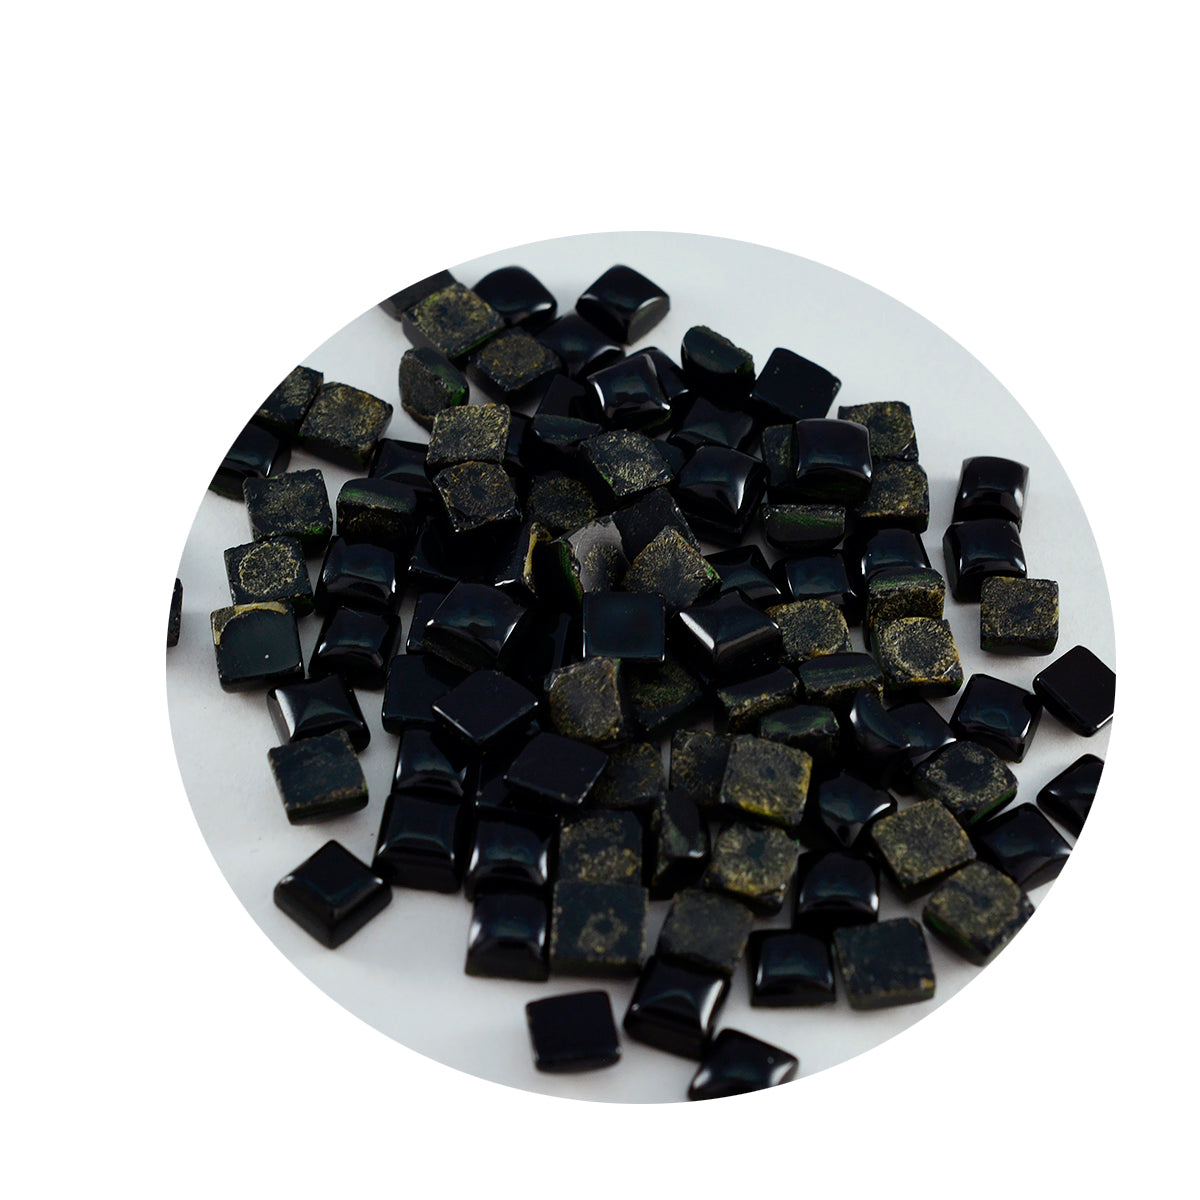 Riyogems 1PC zwarte onyx cabochon 4x4 mm vierkante vorm mooie kwaliteitsedelstenen